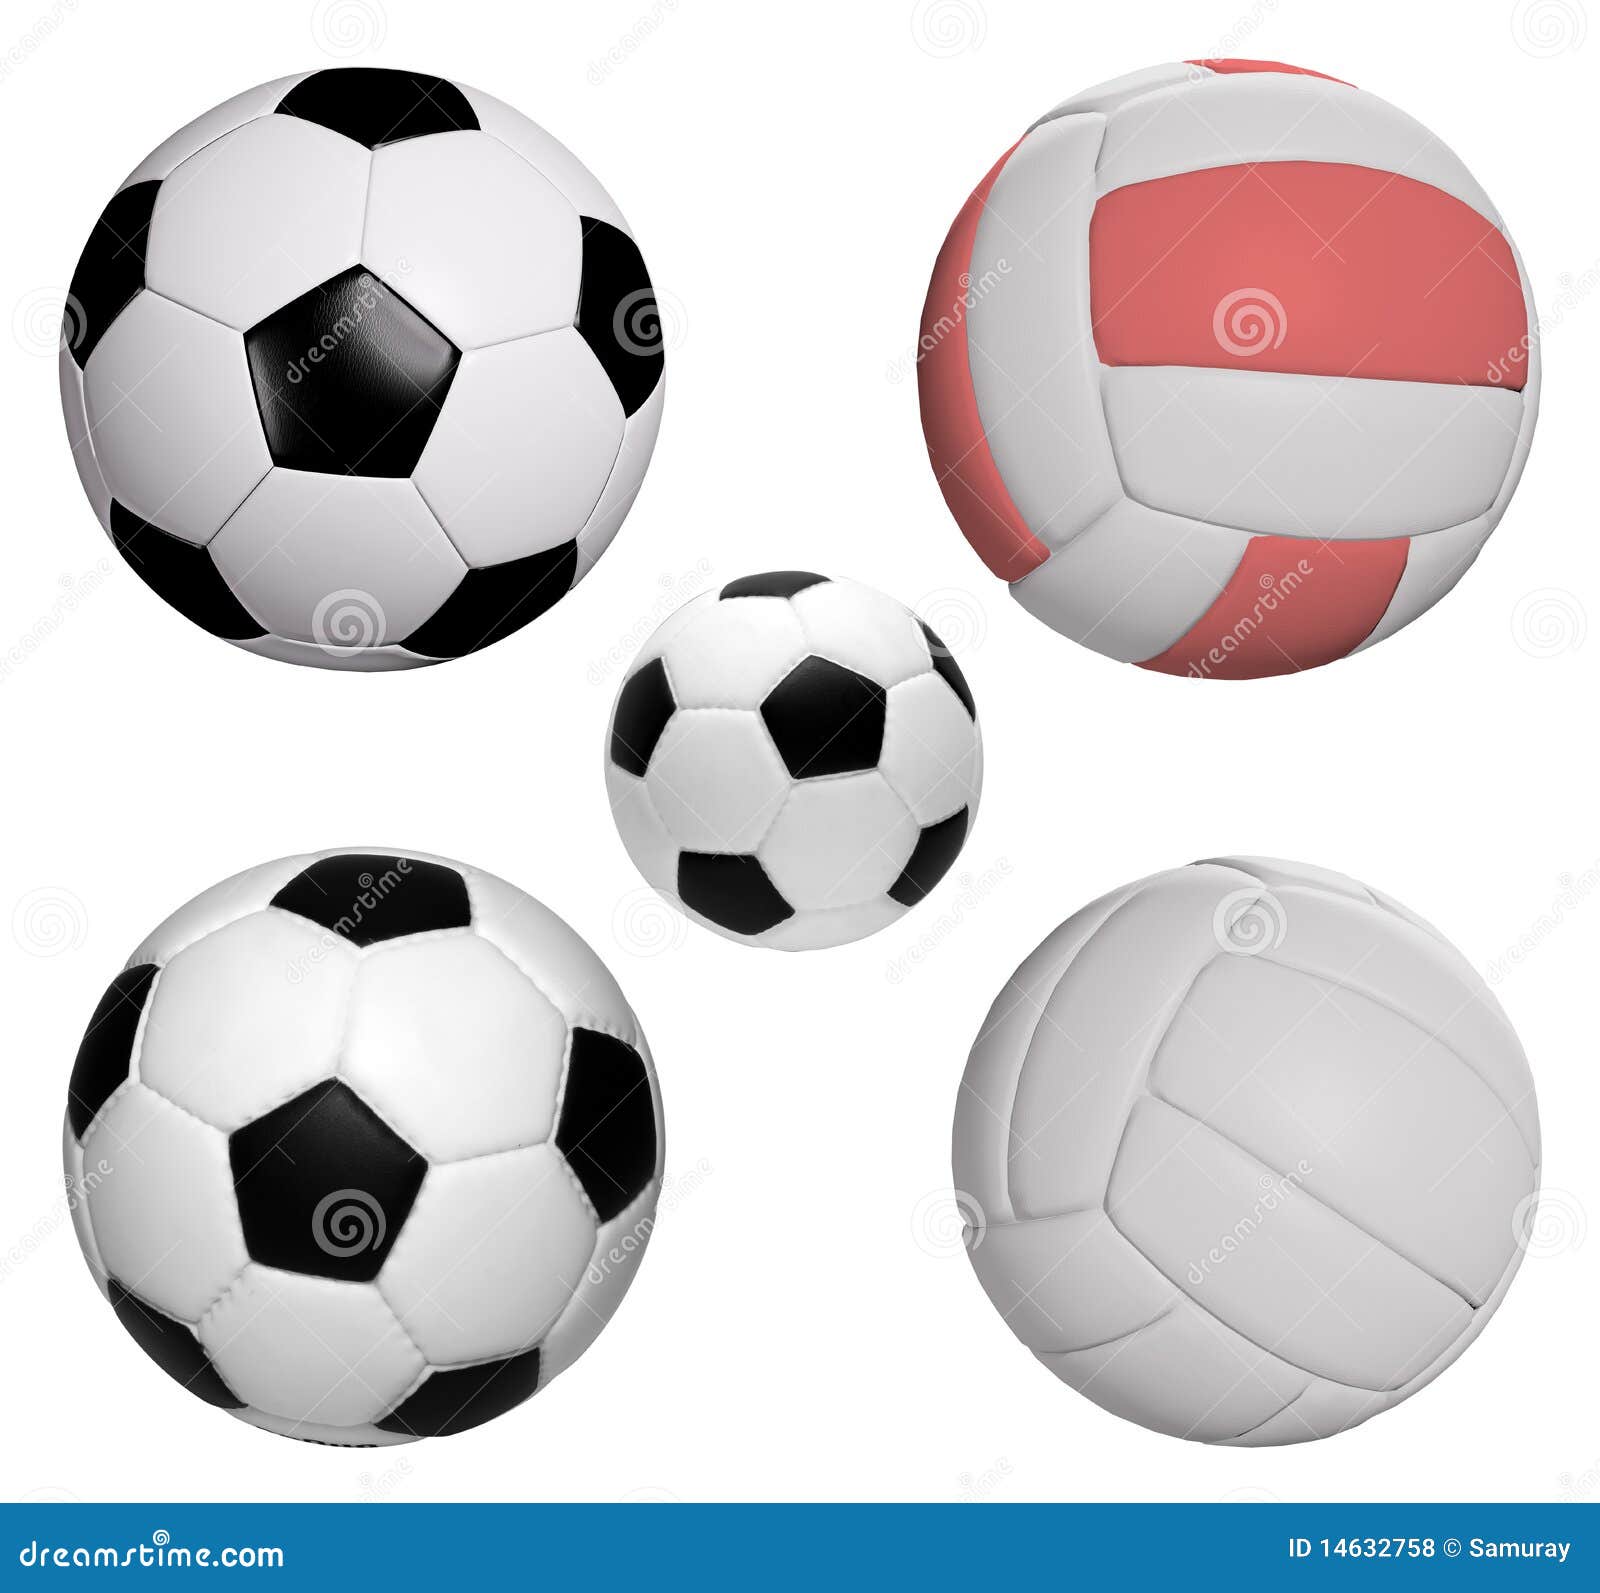 Soccer Ball SVG Soccer Ball Clipart Soccer Ball Vector Eps New Zealand